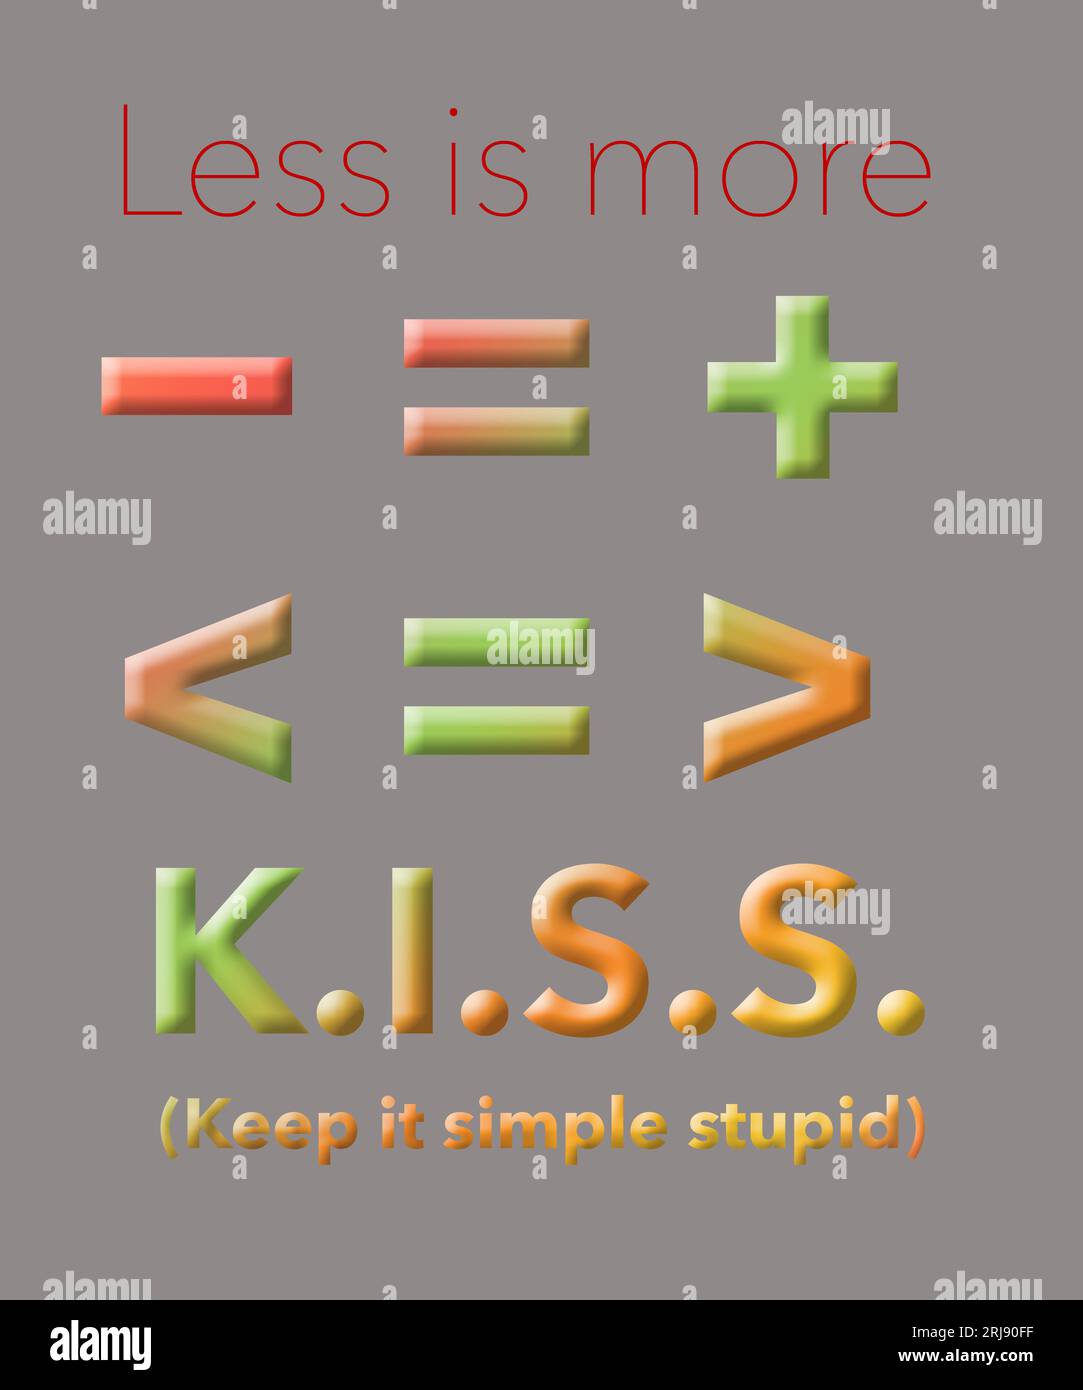 Mathematische Symbole bilden das alte Idiom, dass weniger mehr ist. Einfach ist besser als komplex. KISS ist auch ein Initialismus oder Akronym für Keep it simple stupid in t Stockfoto